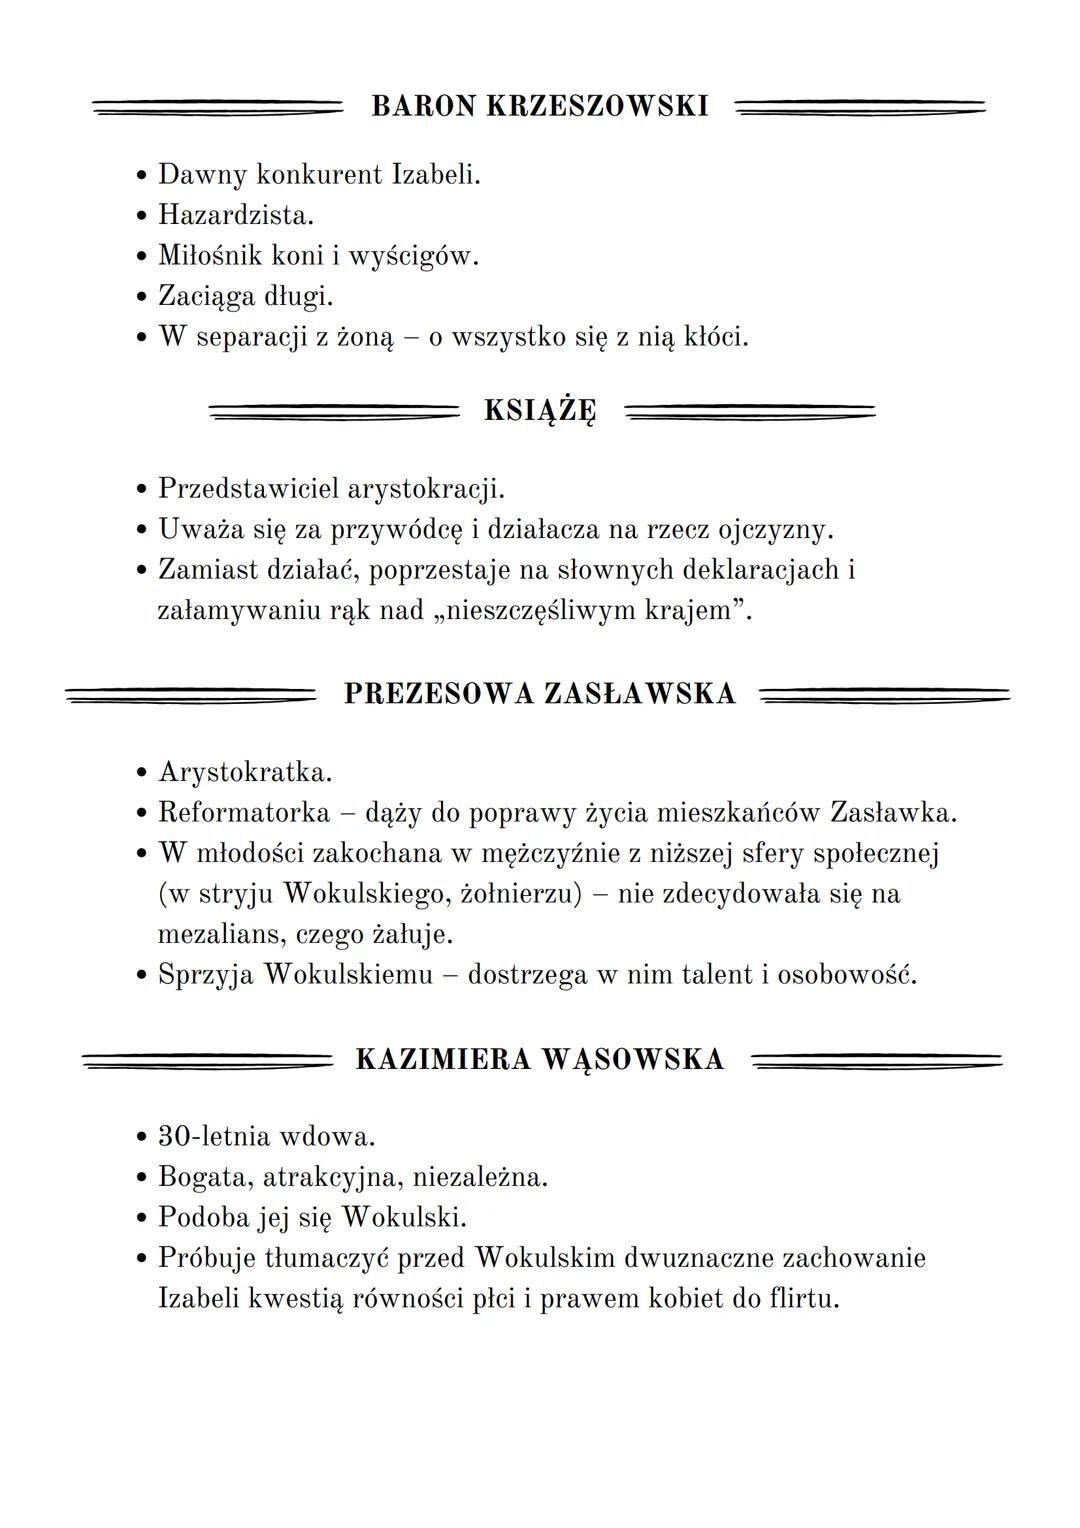 LALKA
Bolesław Prus ●
O utworze
epoka: pozytywizm
●
gatunek: powieść
realistyczna
panorama społeczeństwa
wydana jako książka:
1890 r.
język 